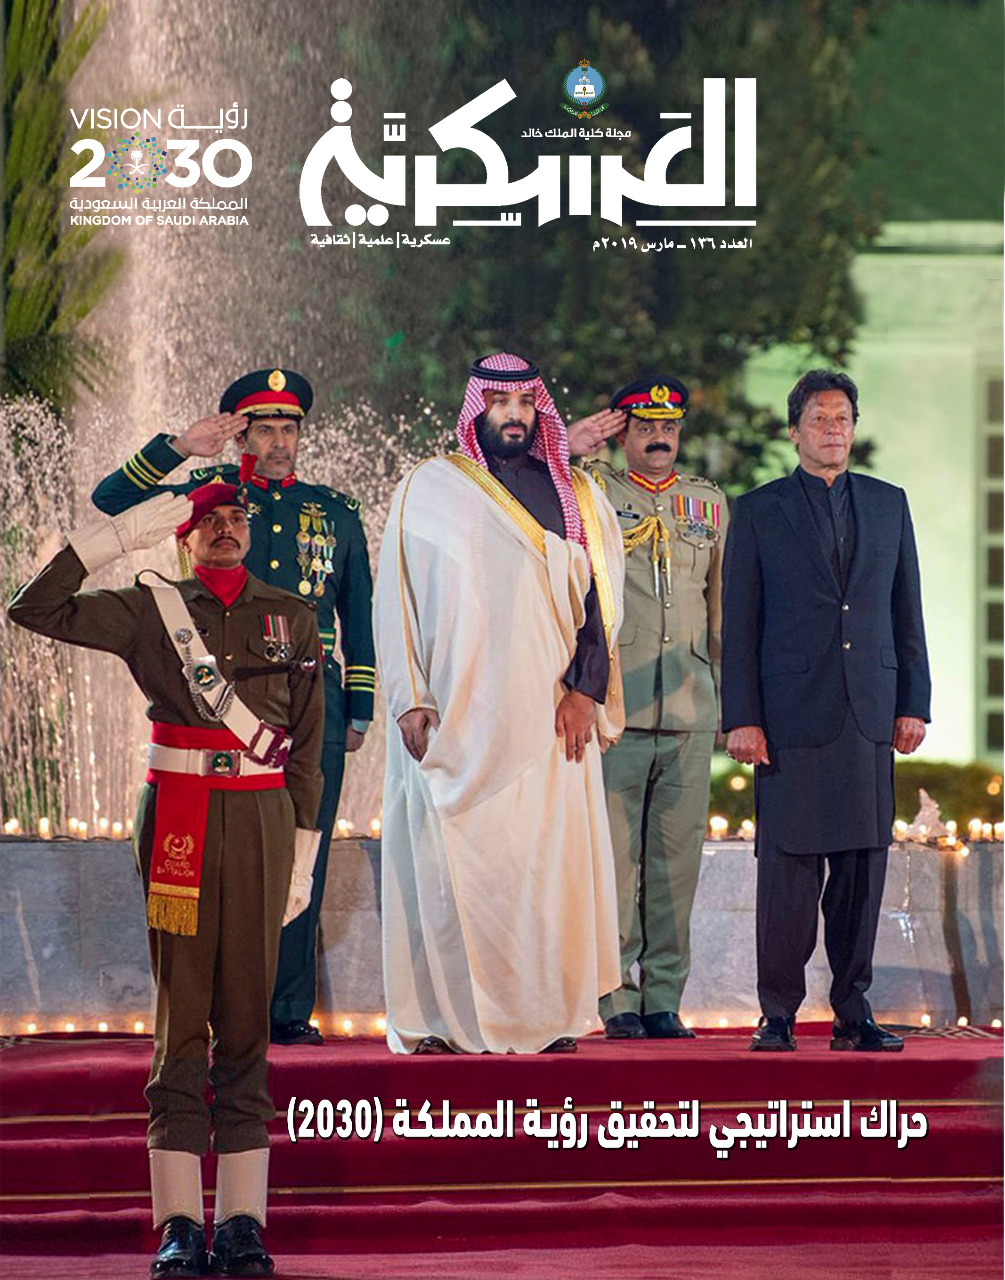 الحراك الاستراتيجي للمملكة محور العدد الجديد من مجلة كلية الملك خالد العسكرية